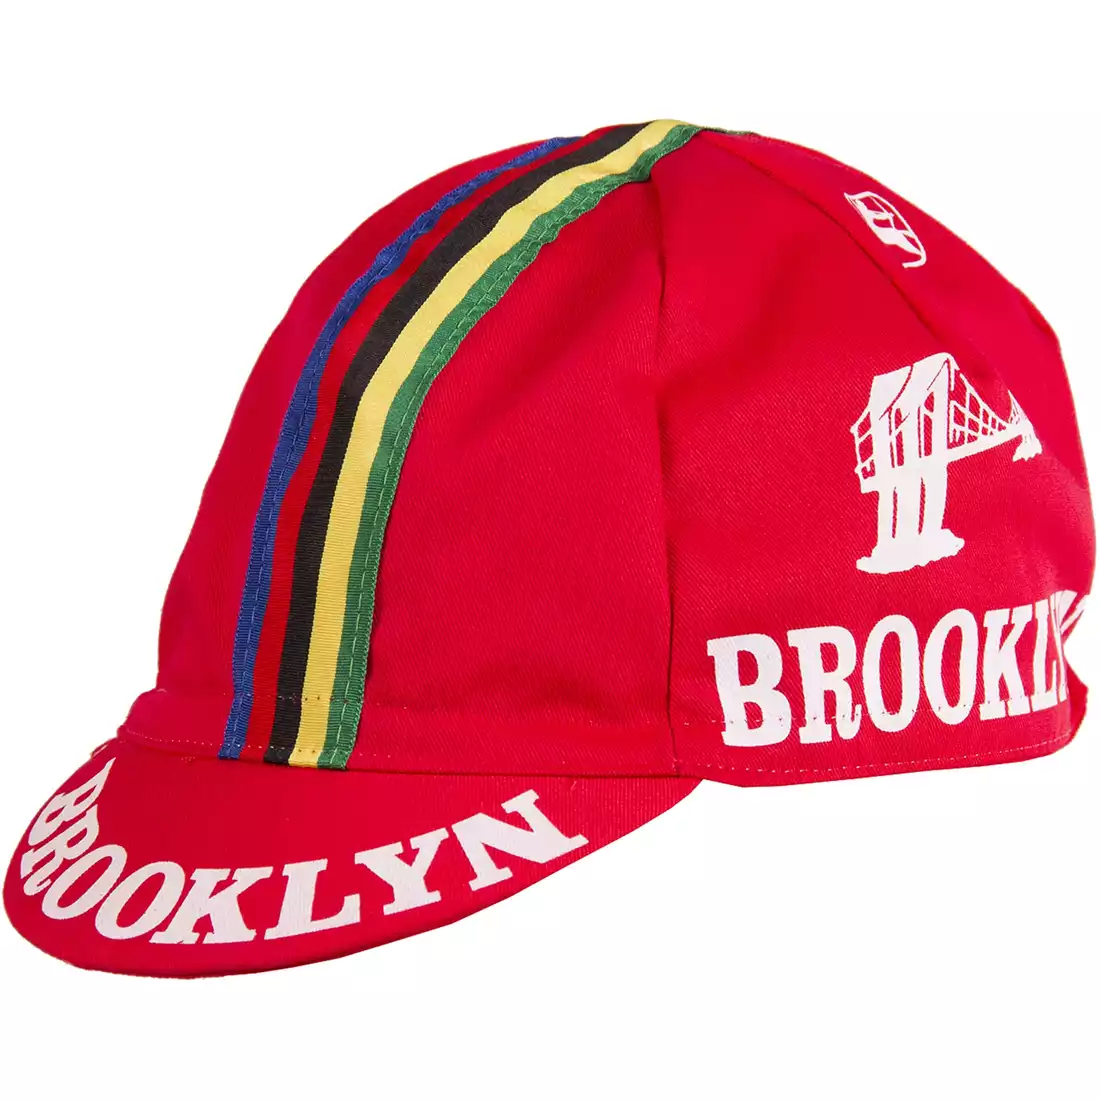 GIORDANA SS18 czapeczka kolarska - Brooklyn -  Red w/ Stripe tape GI-S6-COCA-BROK-REDD one size